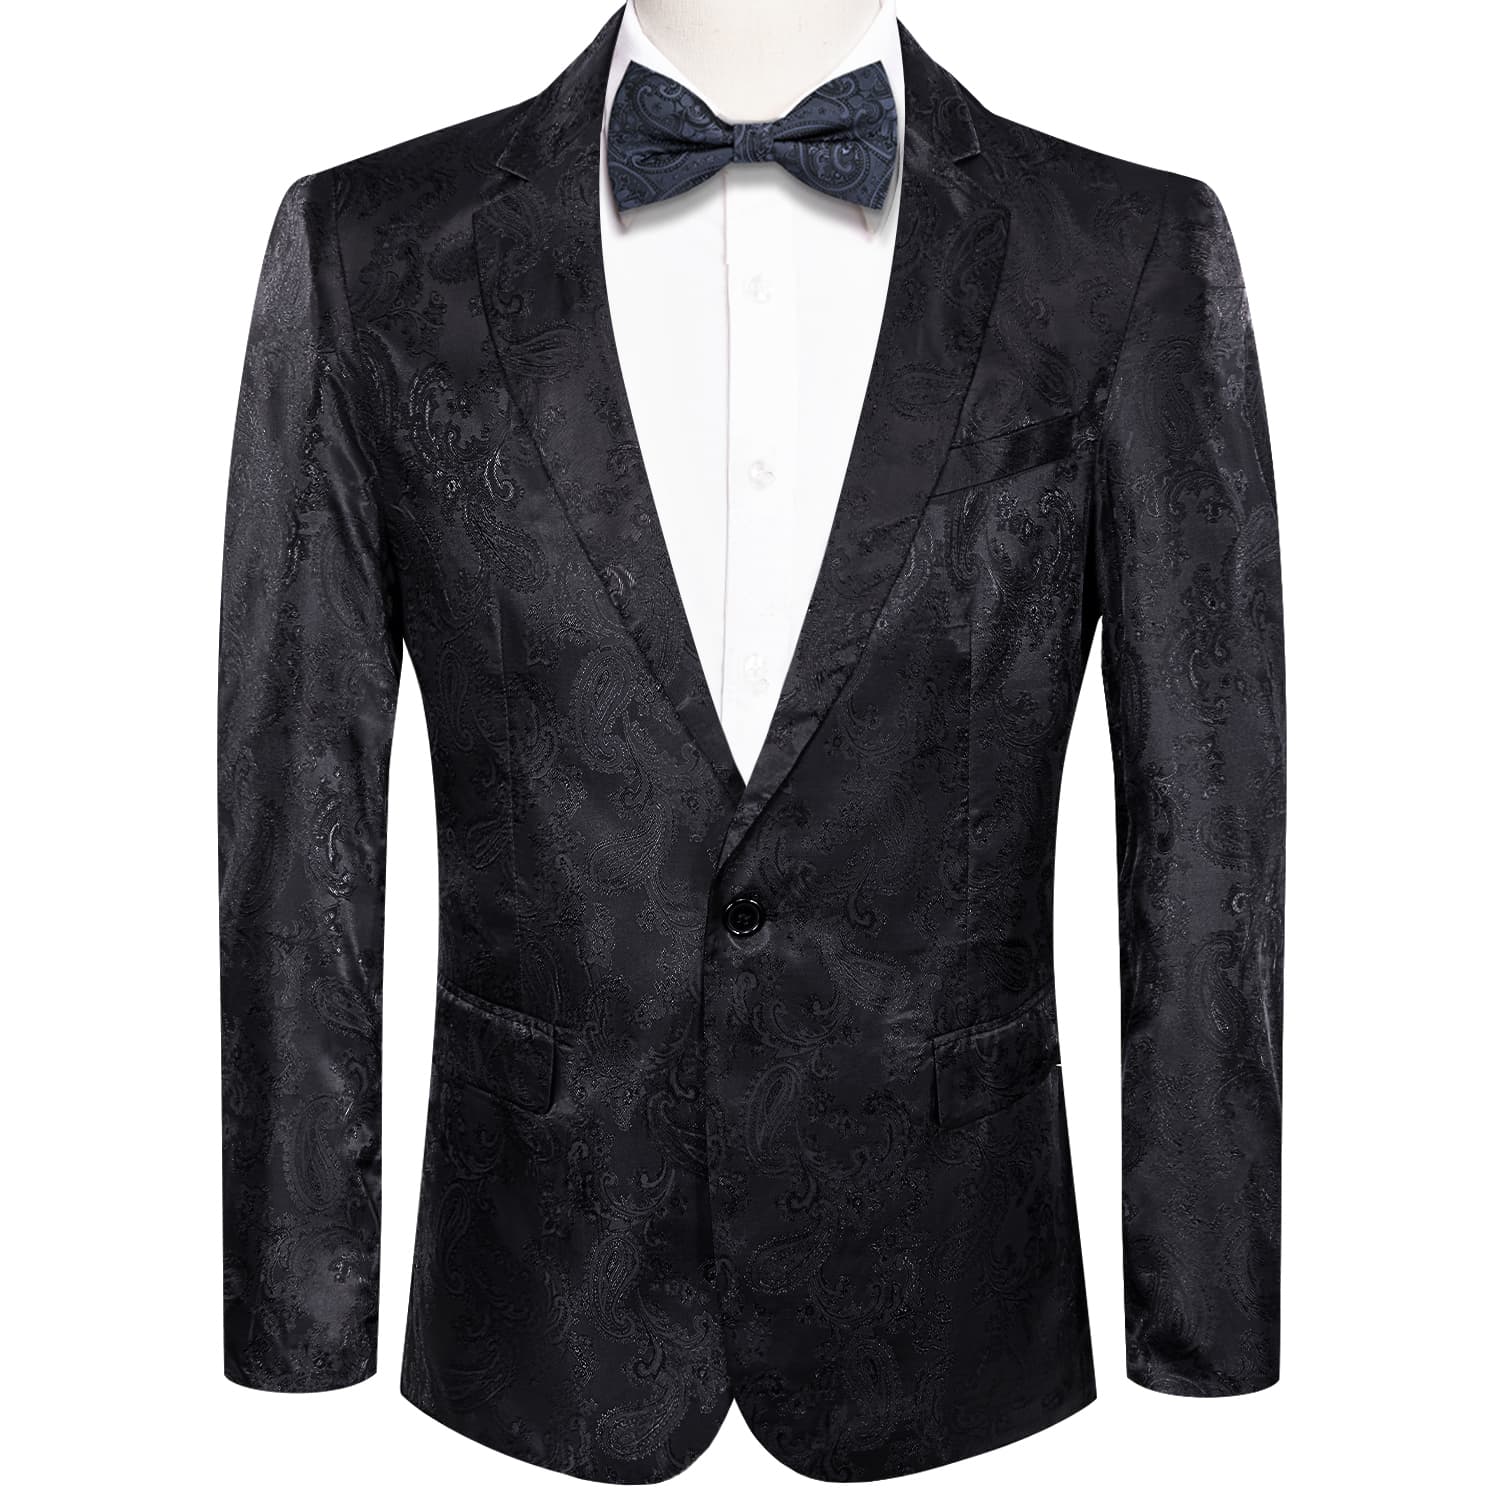 Notched Lapel Blazer Black Men's Wedding Paisley Top Men Suit